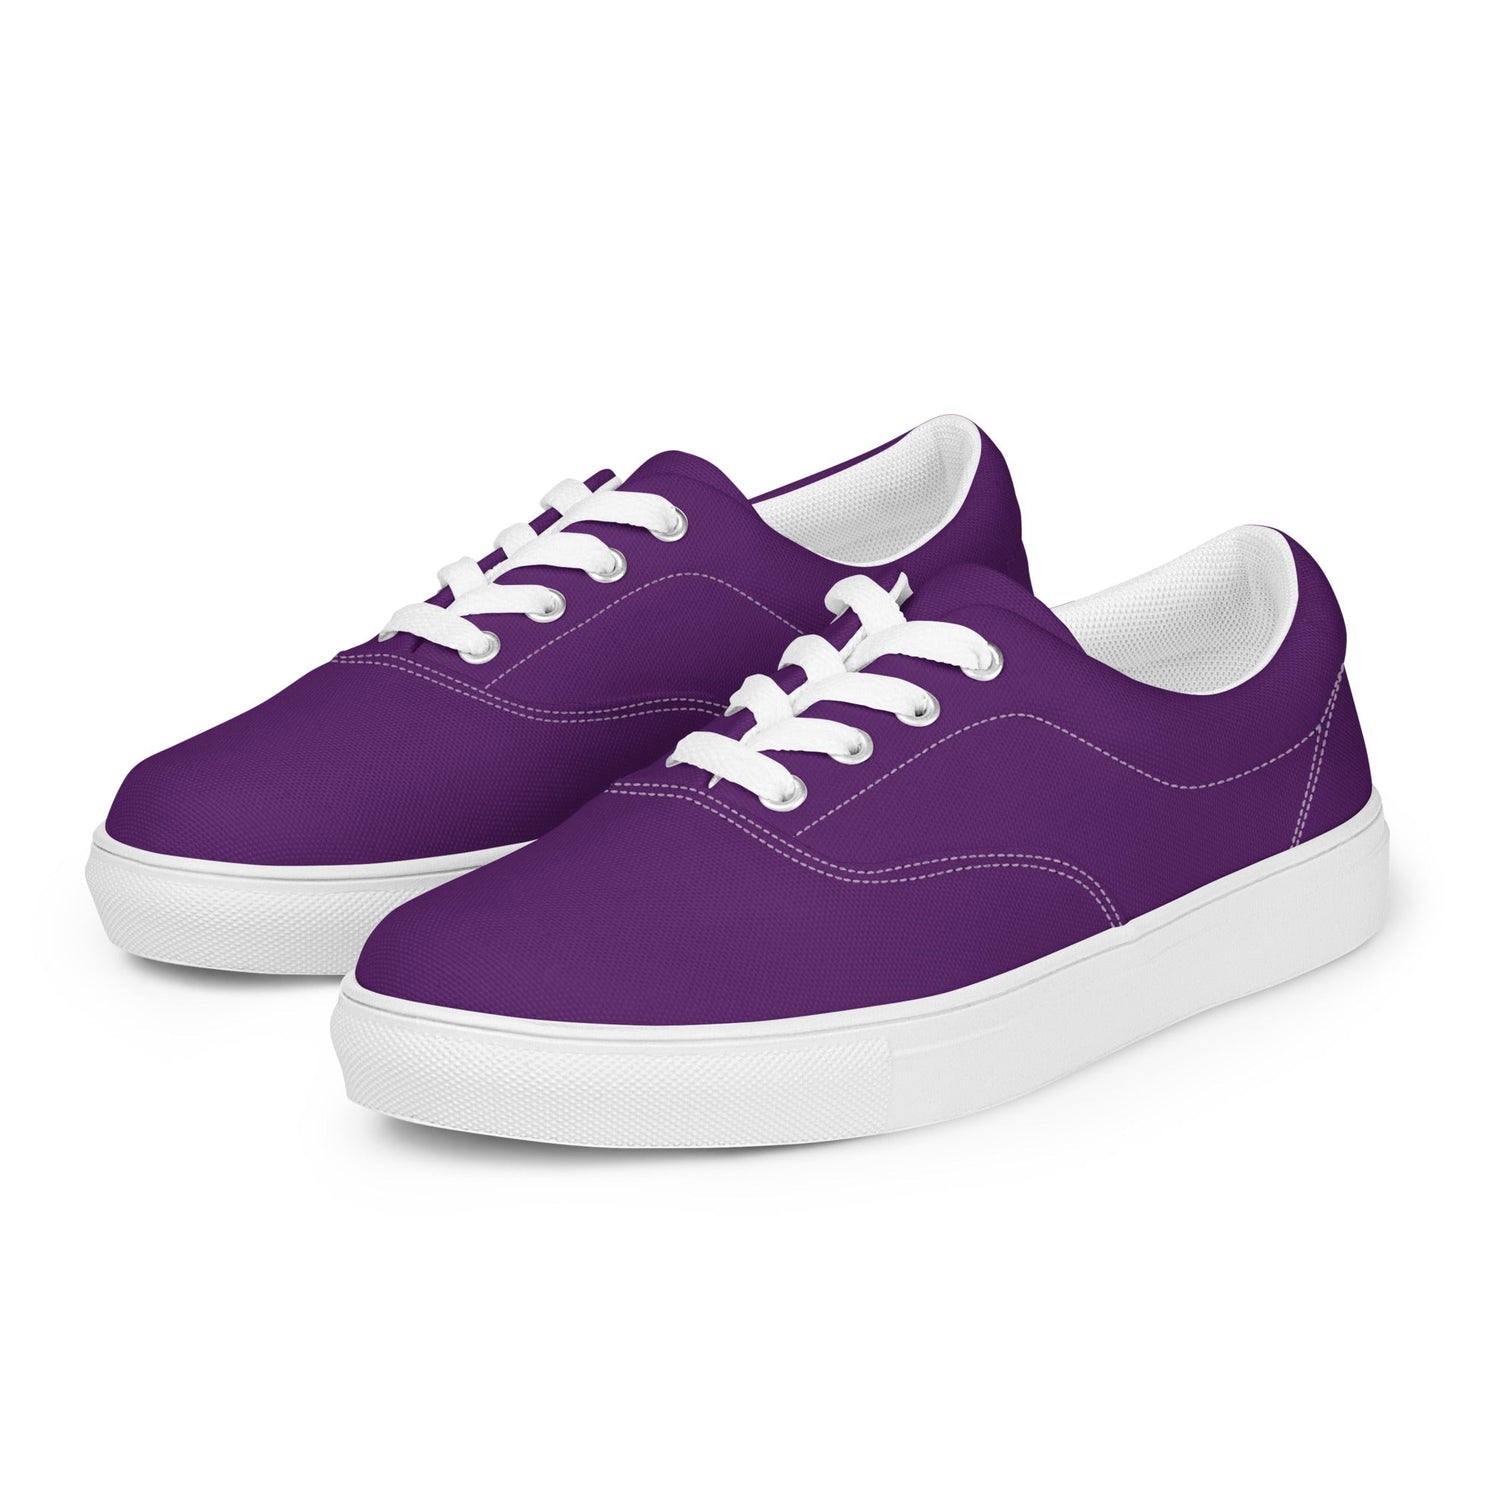 klasneakers Men’s lace-up canvas shoes - Royal Purple